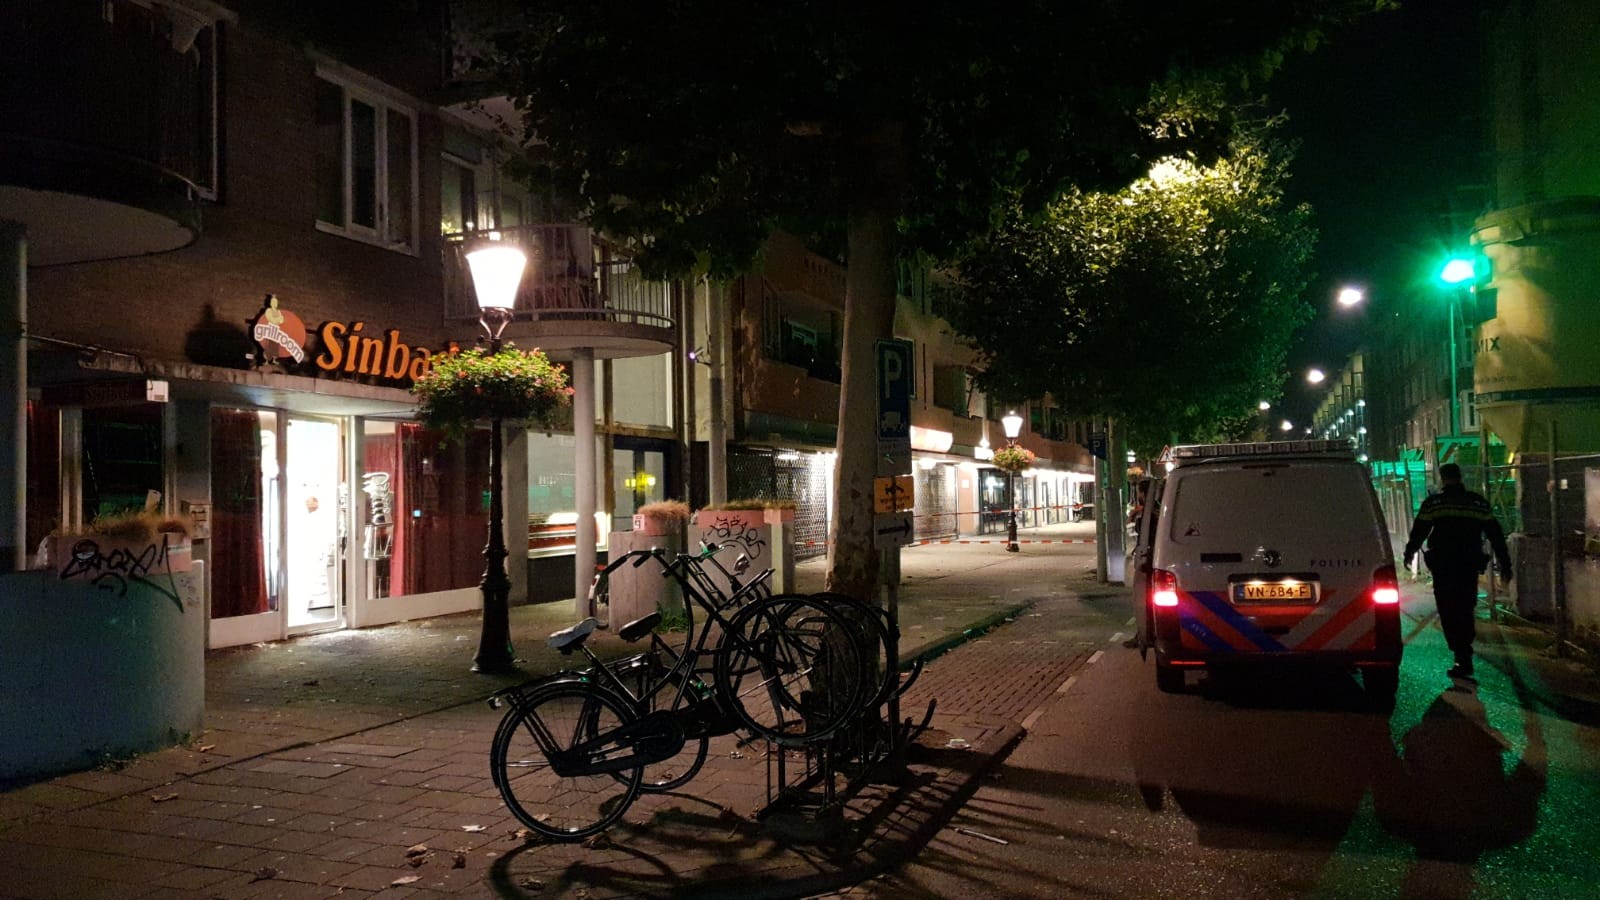 Snackbar onder vuur genomen in Eerste Oosterparkstraat